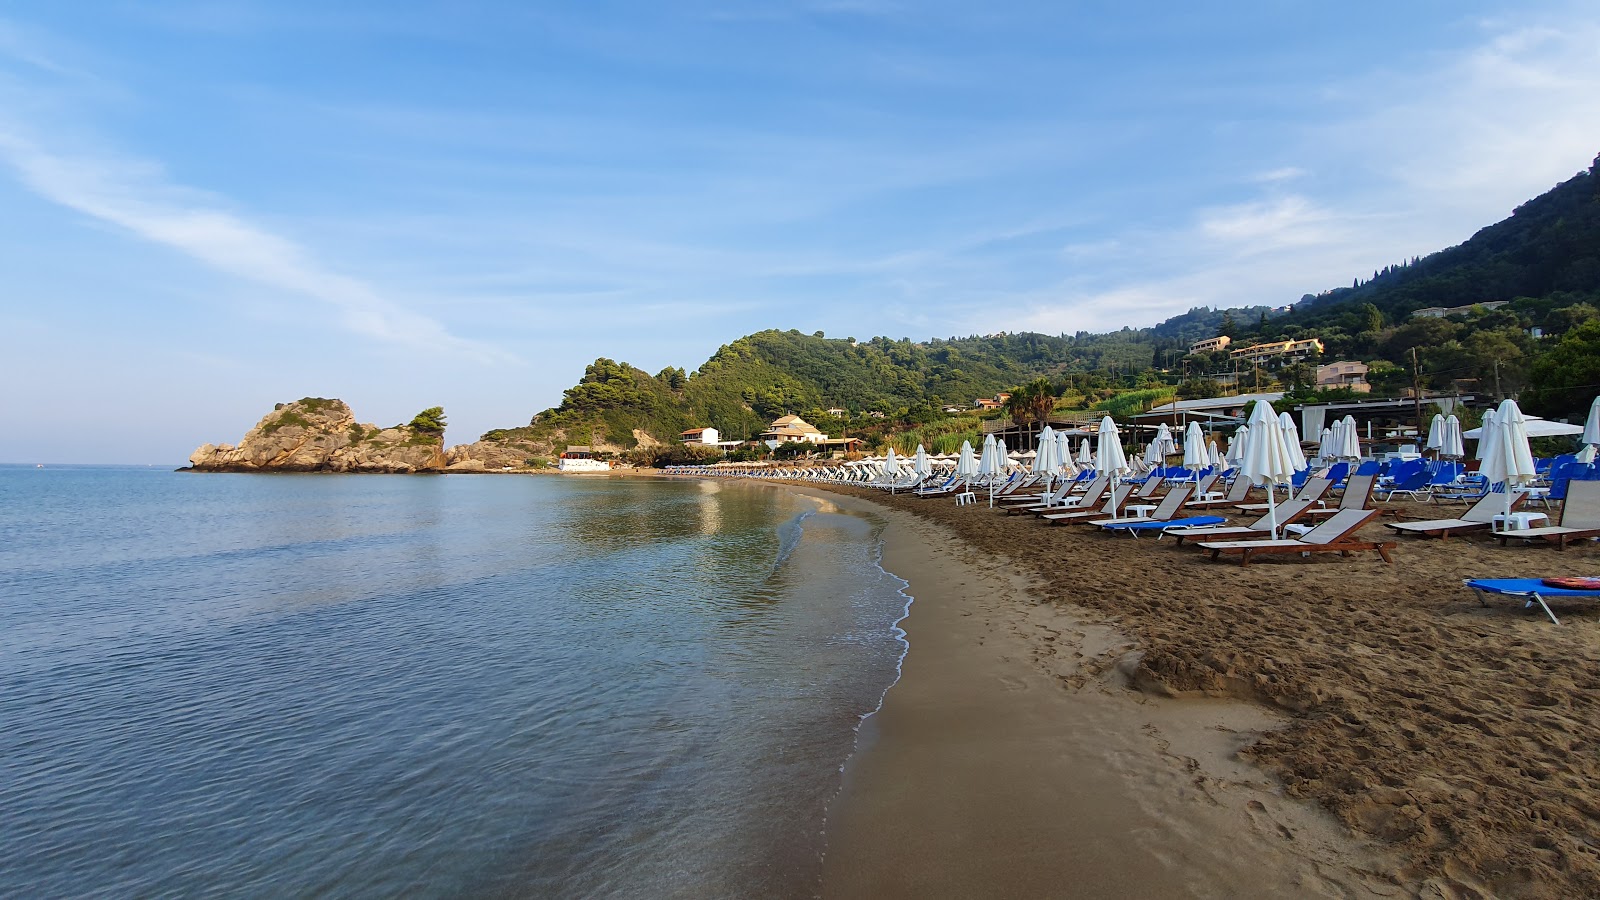 Foto af Kontogialos Strand - populært sted blandt afslapningskendere